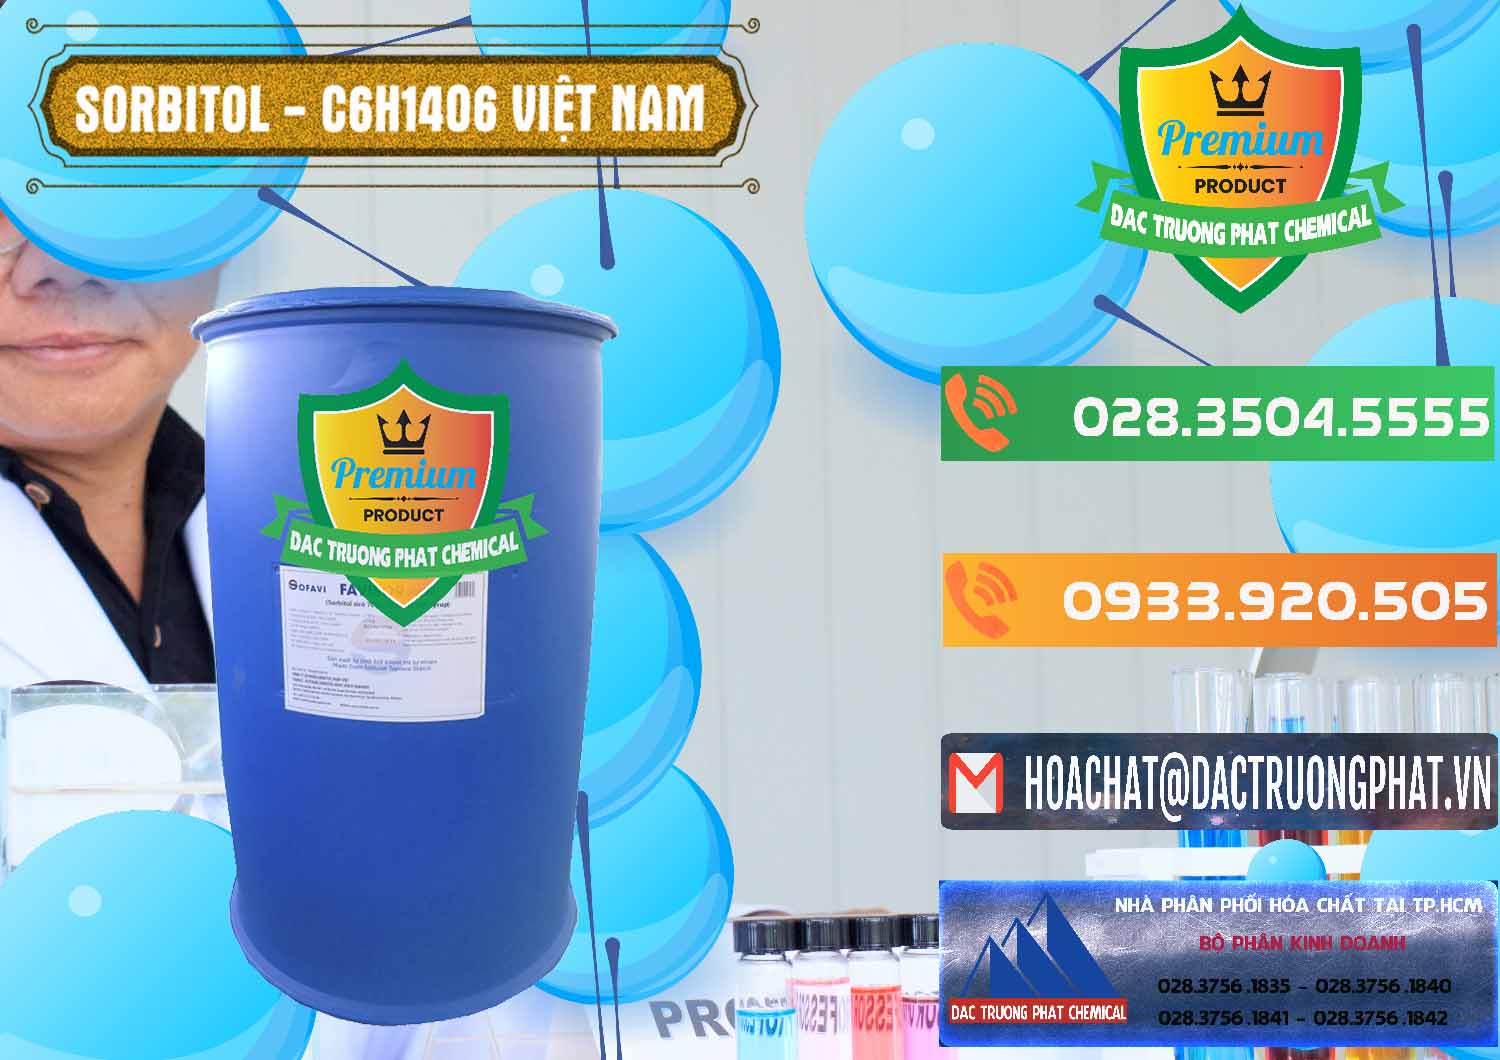 Công ty chuyên cung ứng và phân phối Sorbitol - C6H14O6 Lỏng 70% Food Grade Việt Nam - 0438 - Cty chuyên phân phối _ bán hóa chất tại TP.HCM - hoachatxulynuoc.com.vn